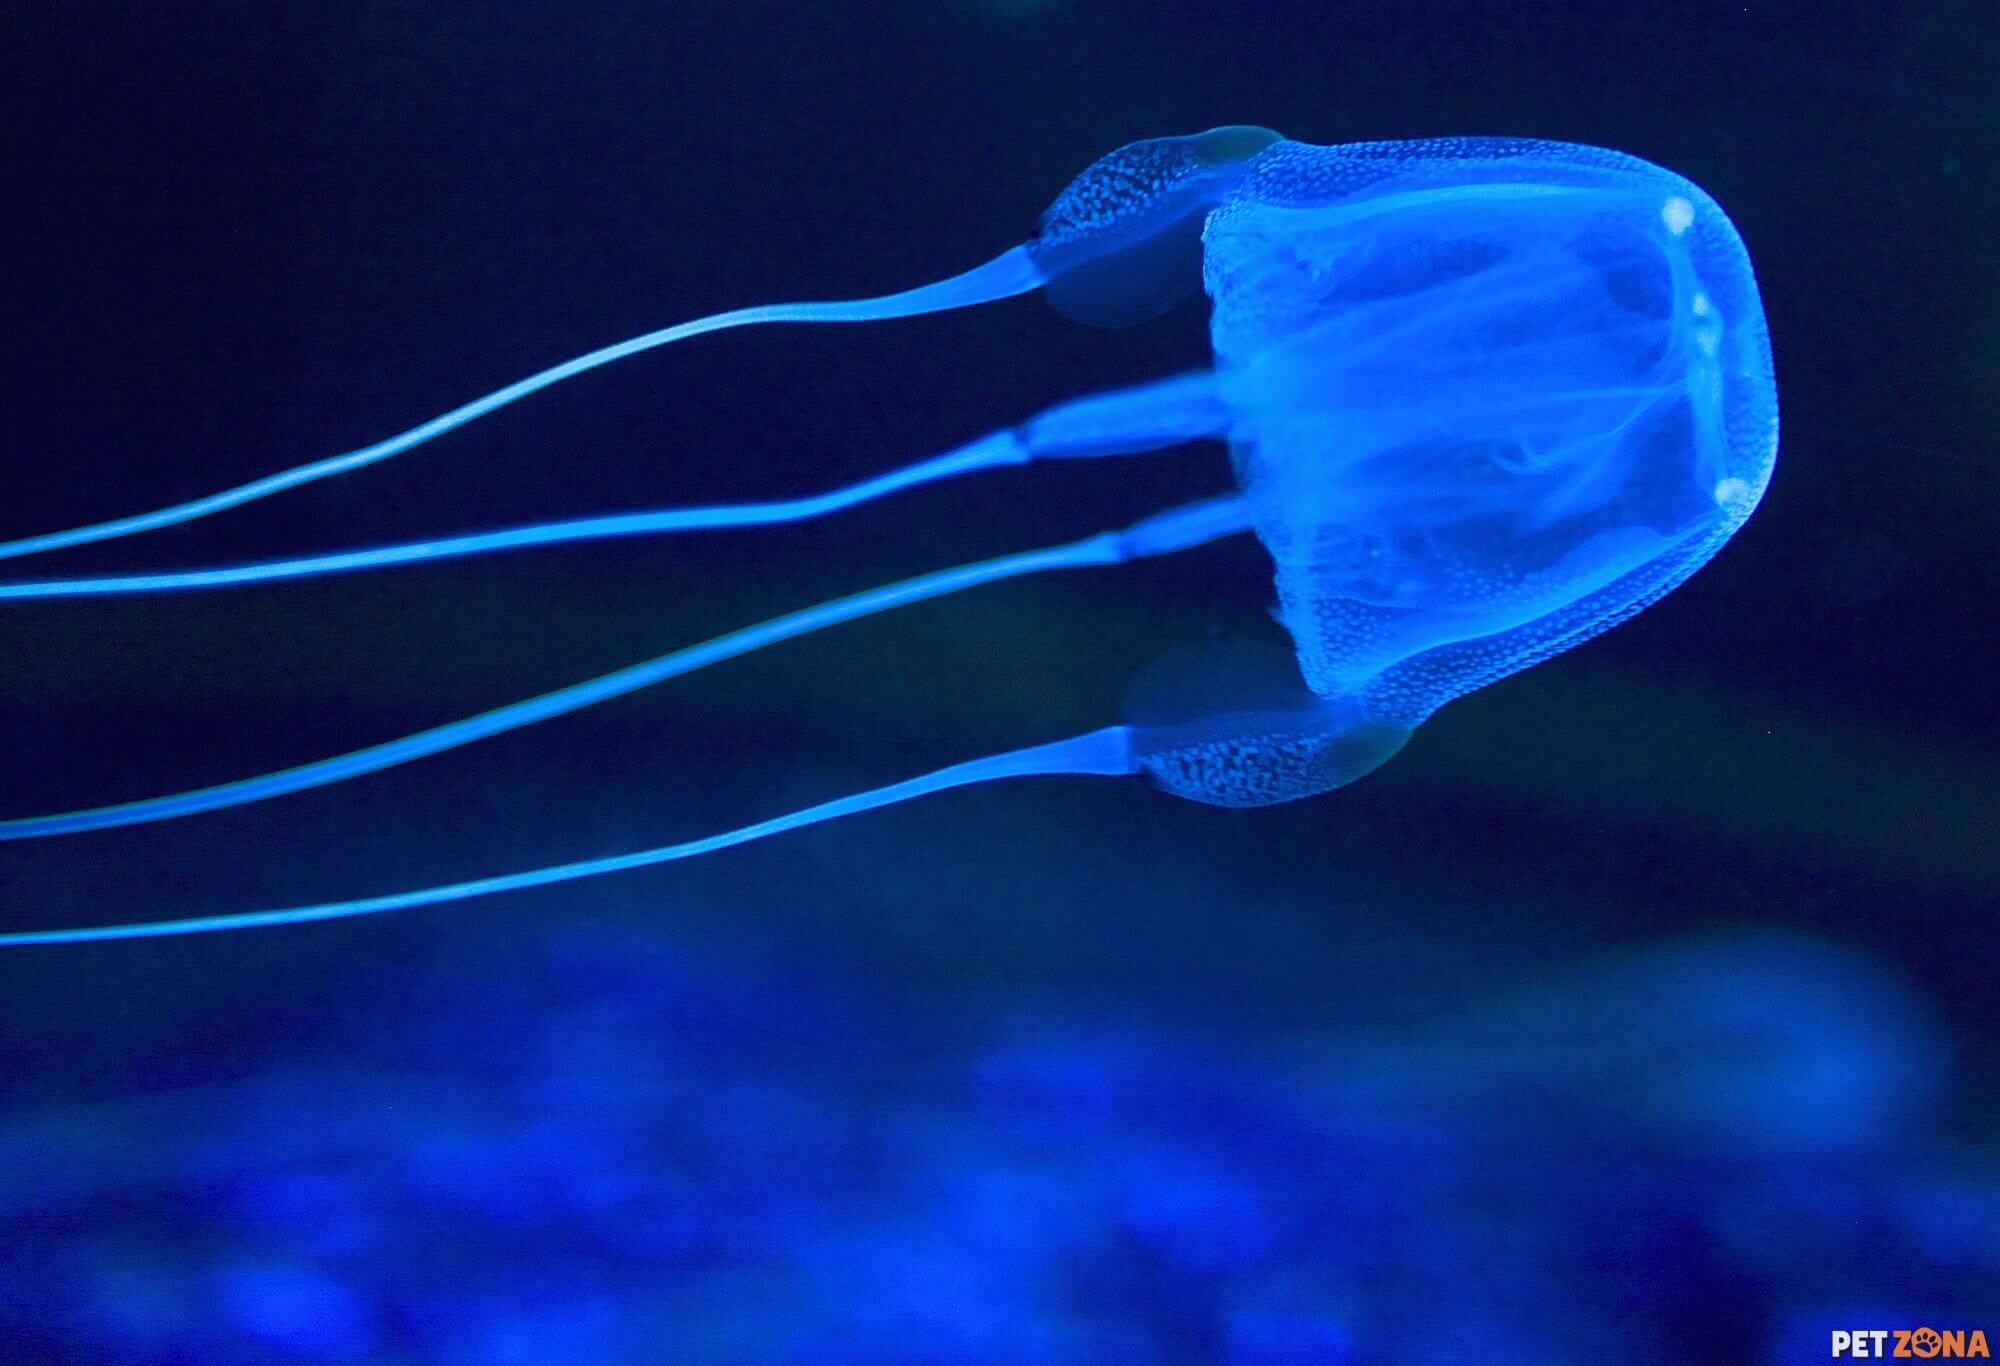 Ядовитые головоногие моллюски и медузы Австралии. Яд коробчатой медузы убивает человека в течение нескольких медуз. Фото.